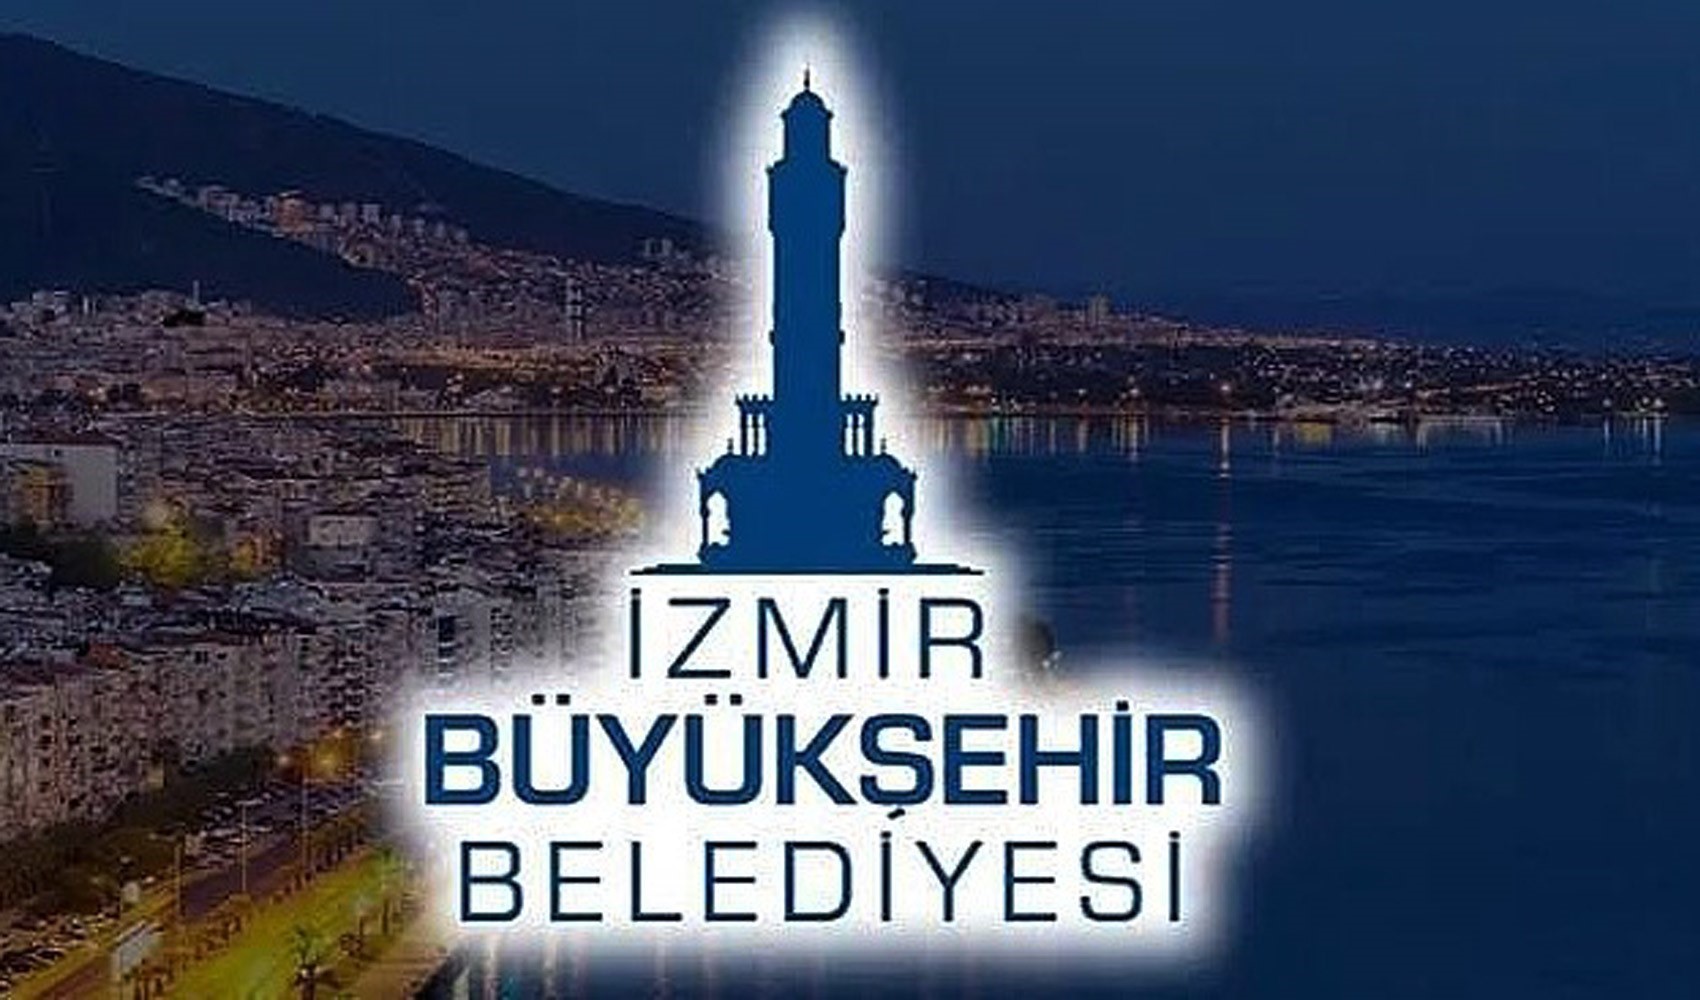 İzmir Büyükşehir'den işten çıkarma açıklaması